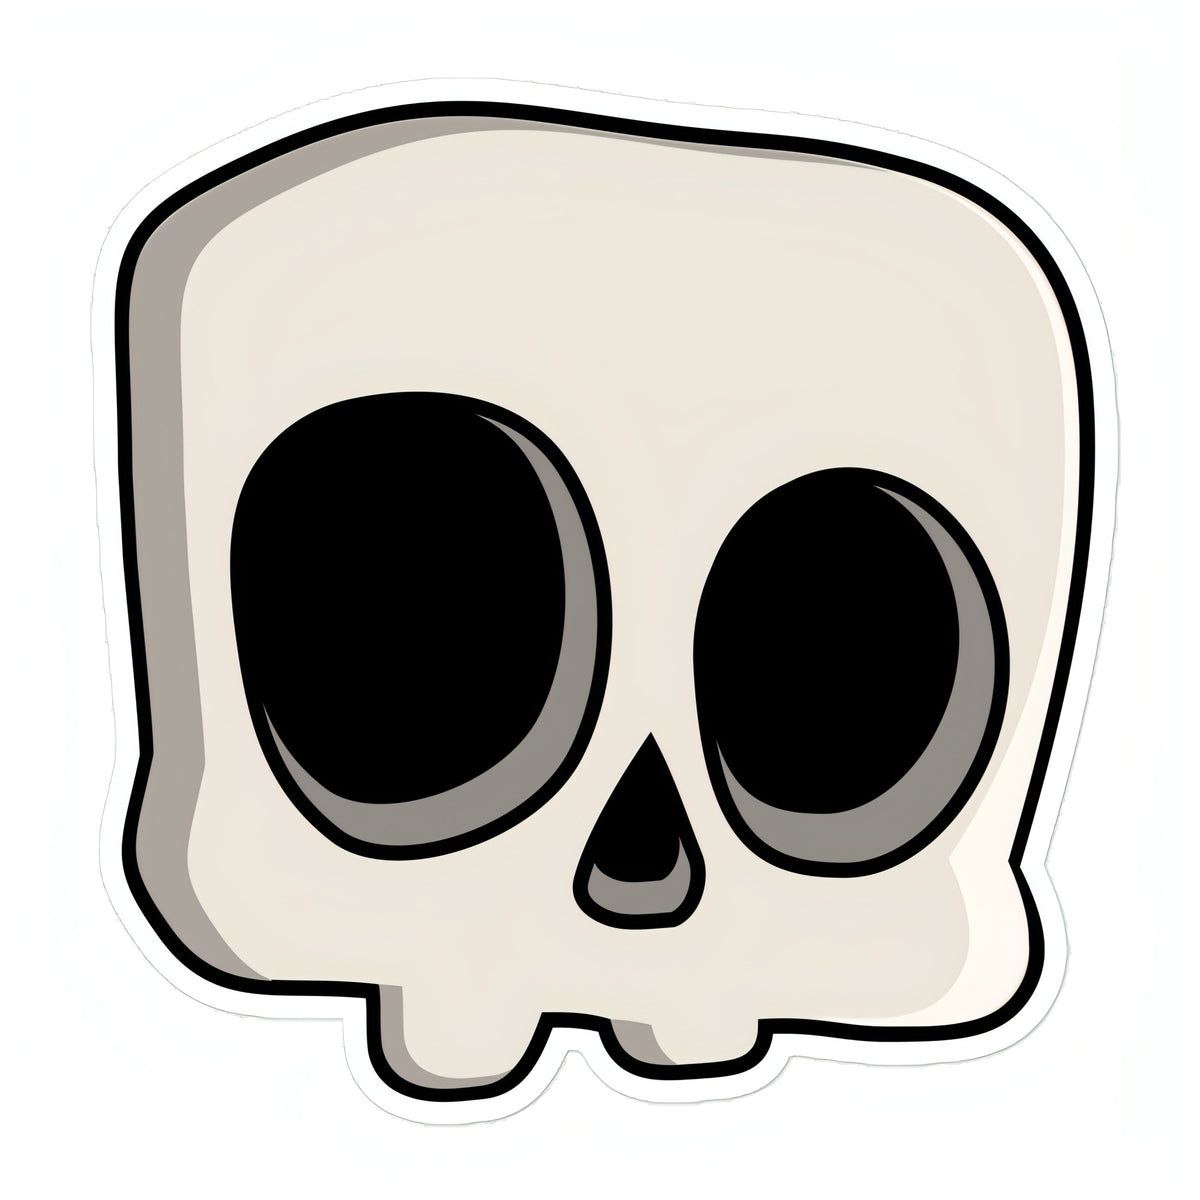 Calaverito Sticker (Skull)